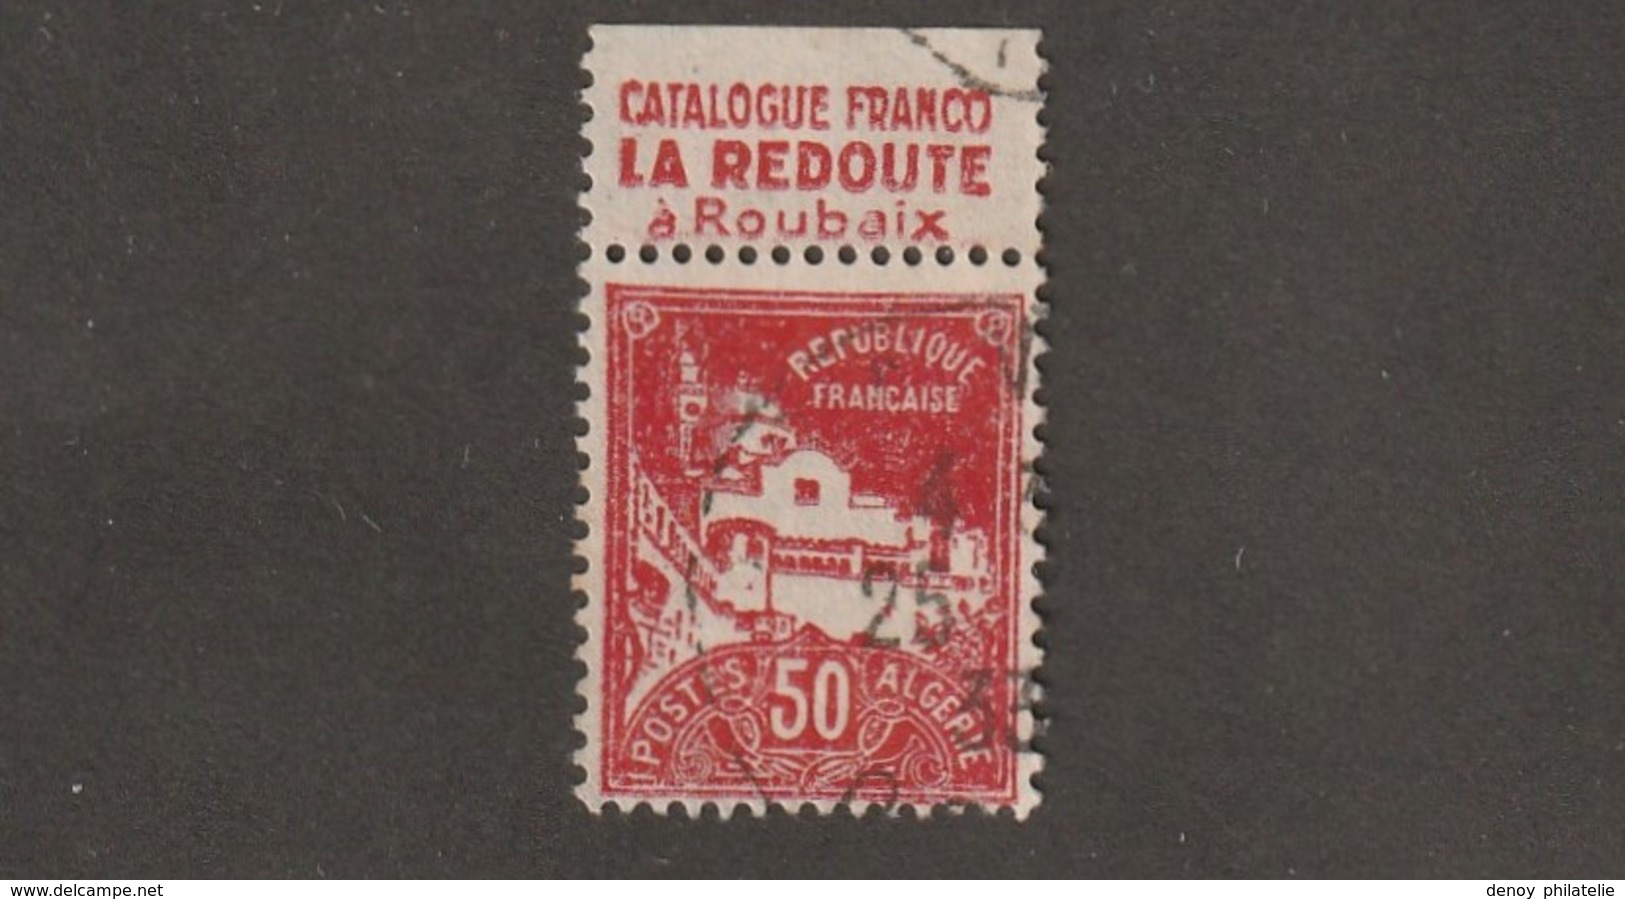 Algérie Timbre N° 79 A Avec Bande Publicitaire La Redoute - Usati